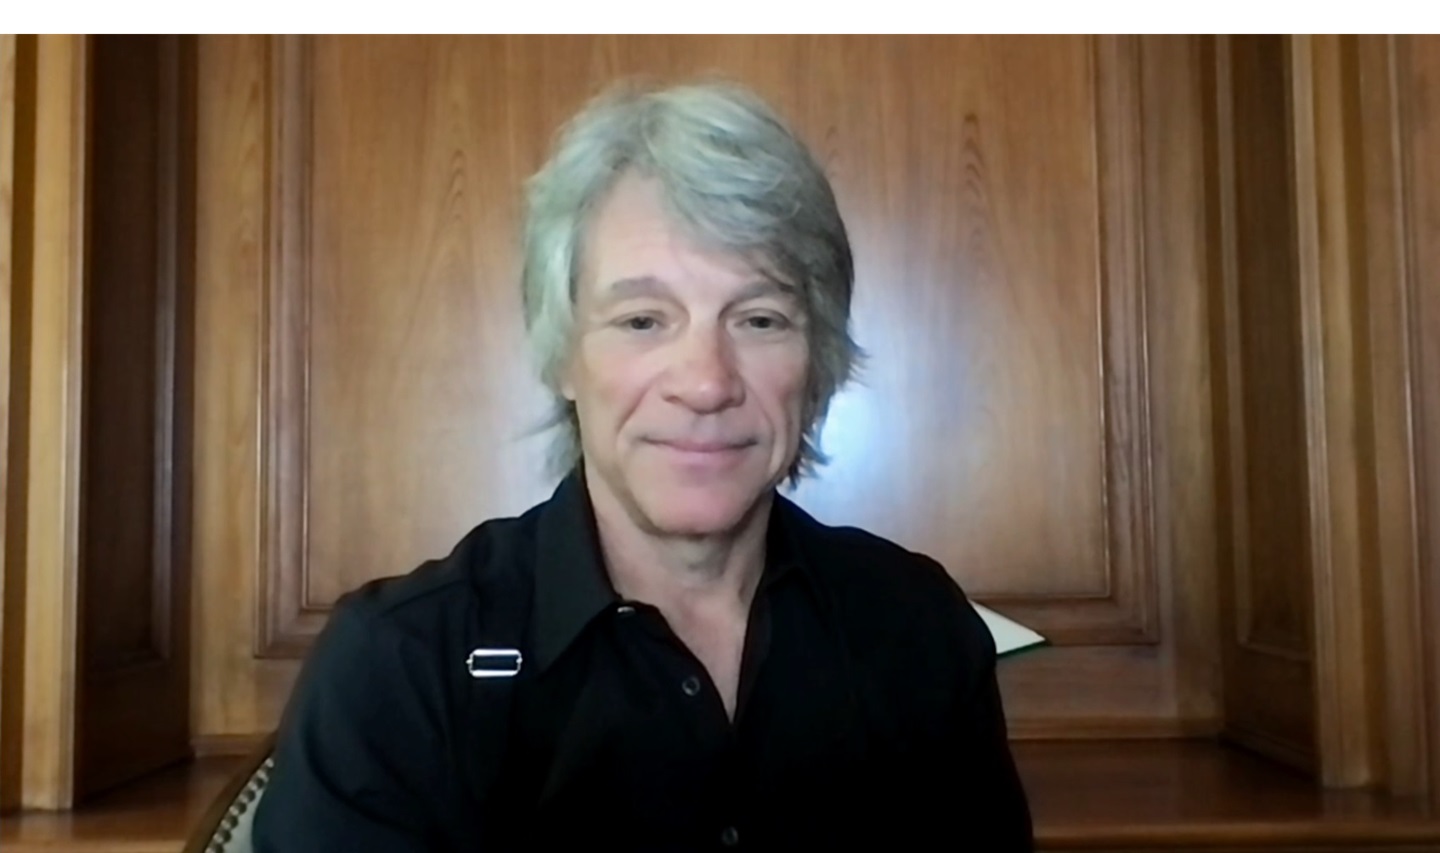 Jon Bon Jovi diz que buscou a verdade em documentário e espera voltar ao Brasil